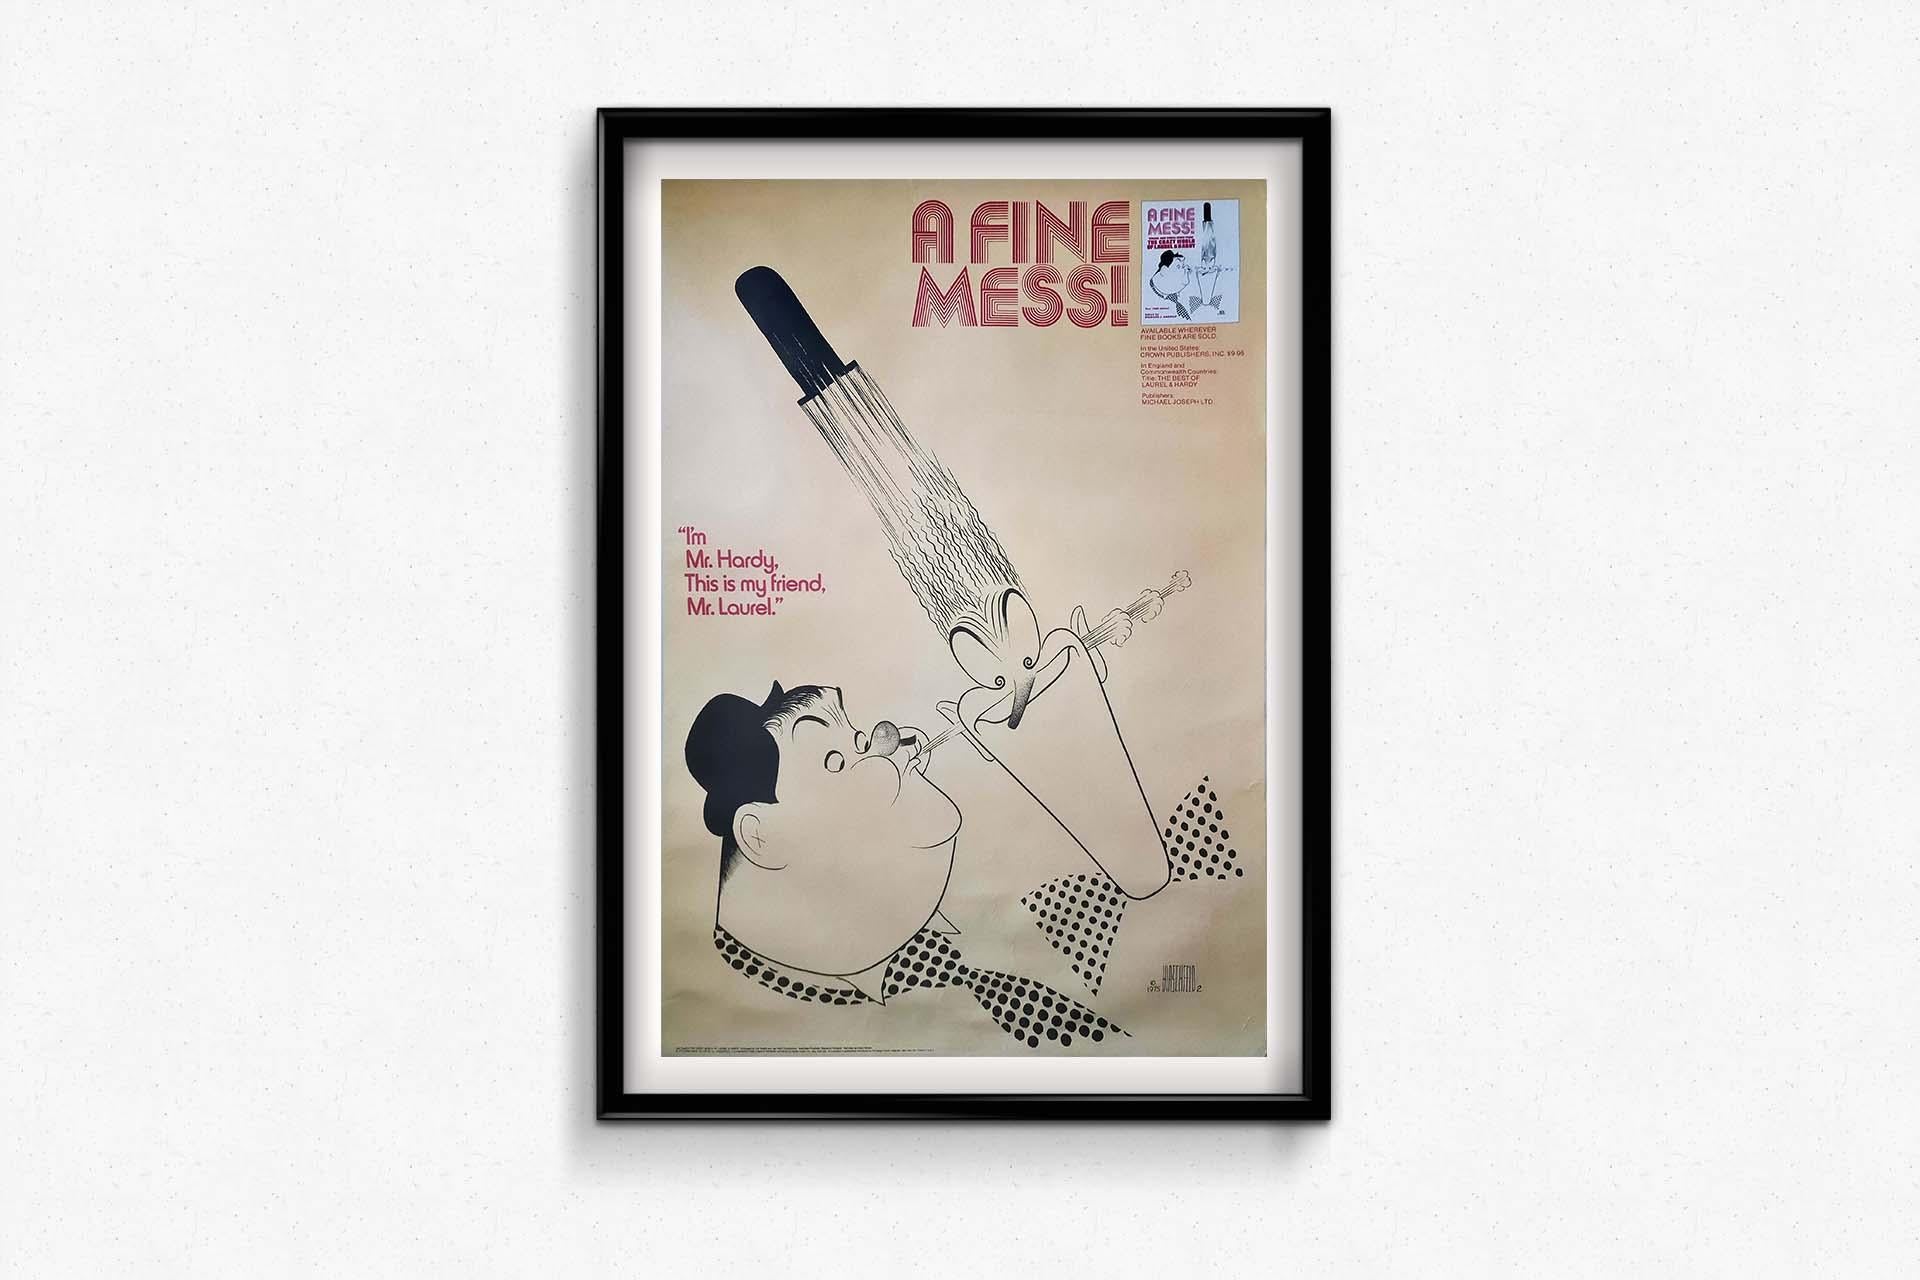 Réalisée en 1975, l'affiche originale d'Al Hirschfeld intitulée 